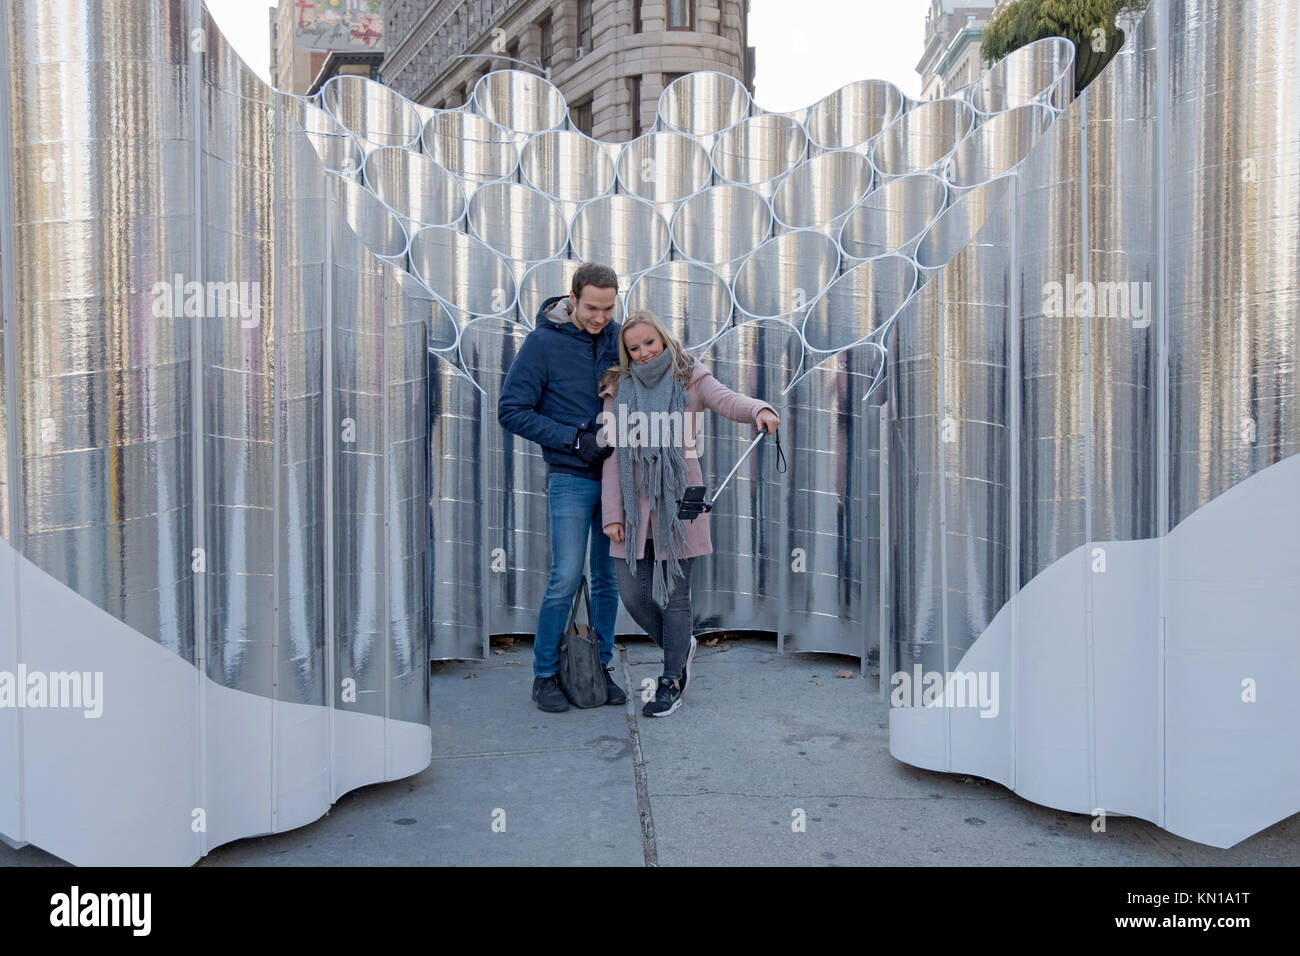 Los turistas alemanes, posando para las fotos delante de la escultura Flatiron reflexiones de futuro expresión en el Flatiron District de la ciudad de Nueva York. Foto de stock